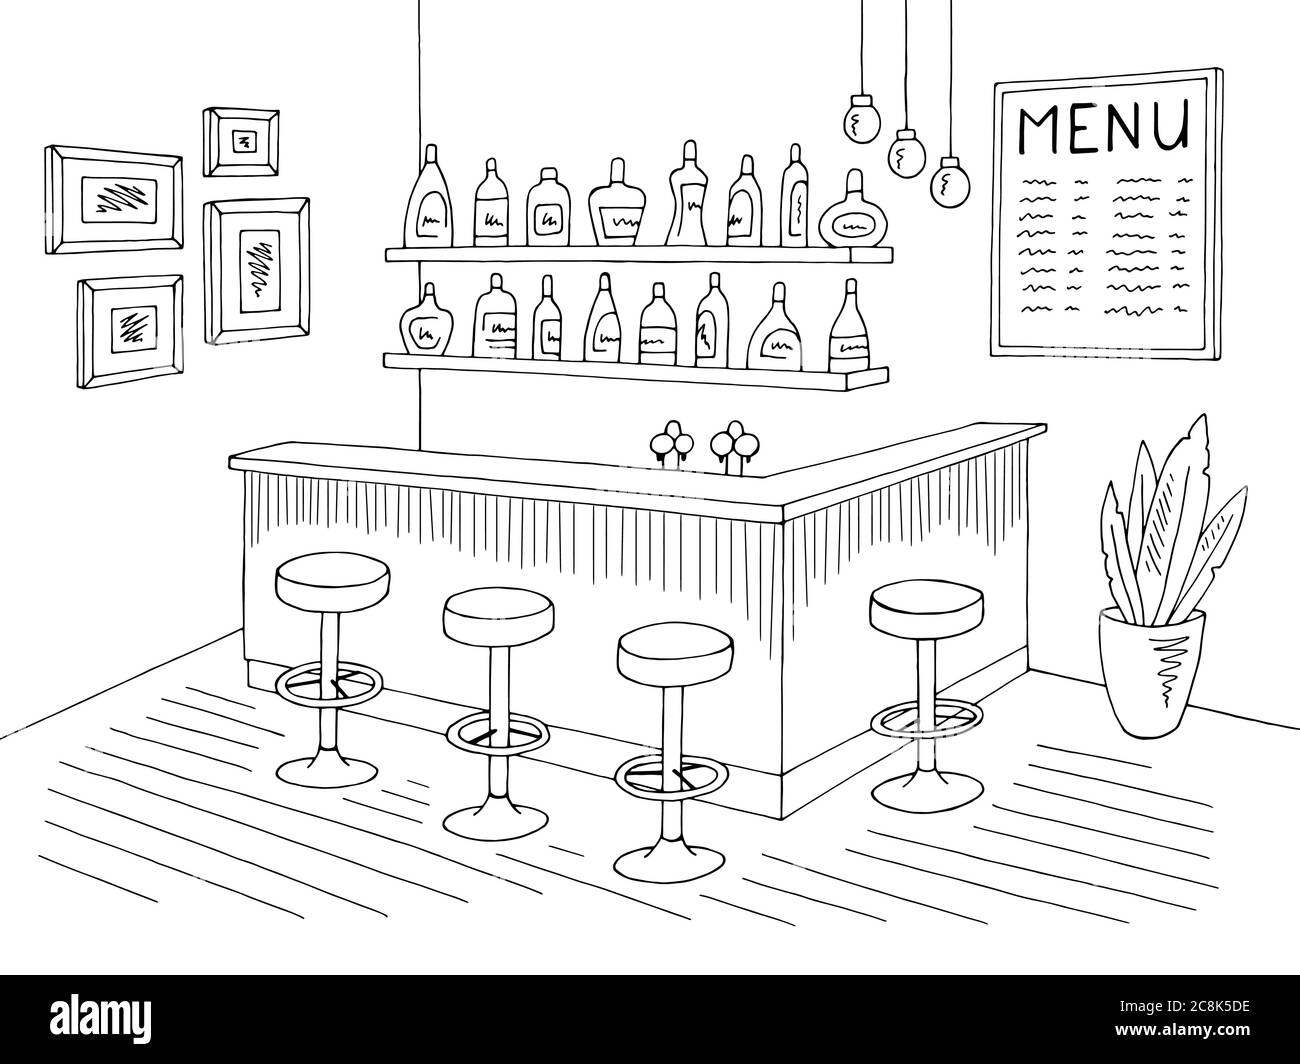 Motif barre de café noir blanc dessin intérieur vectoriel Image Vectorielle  Stock - Alamy